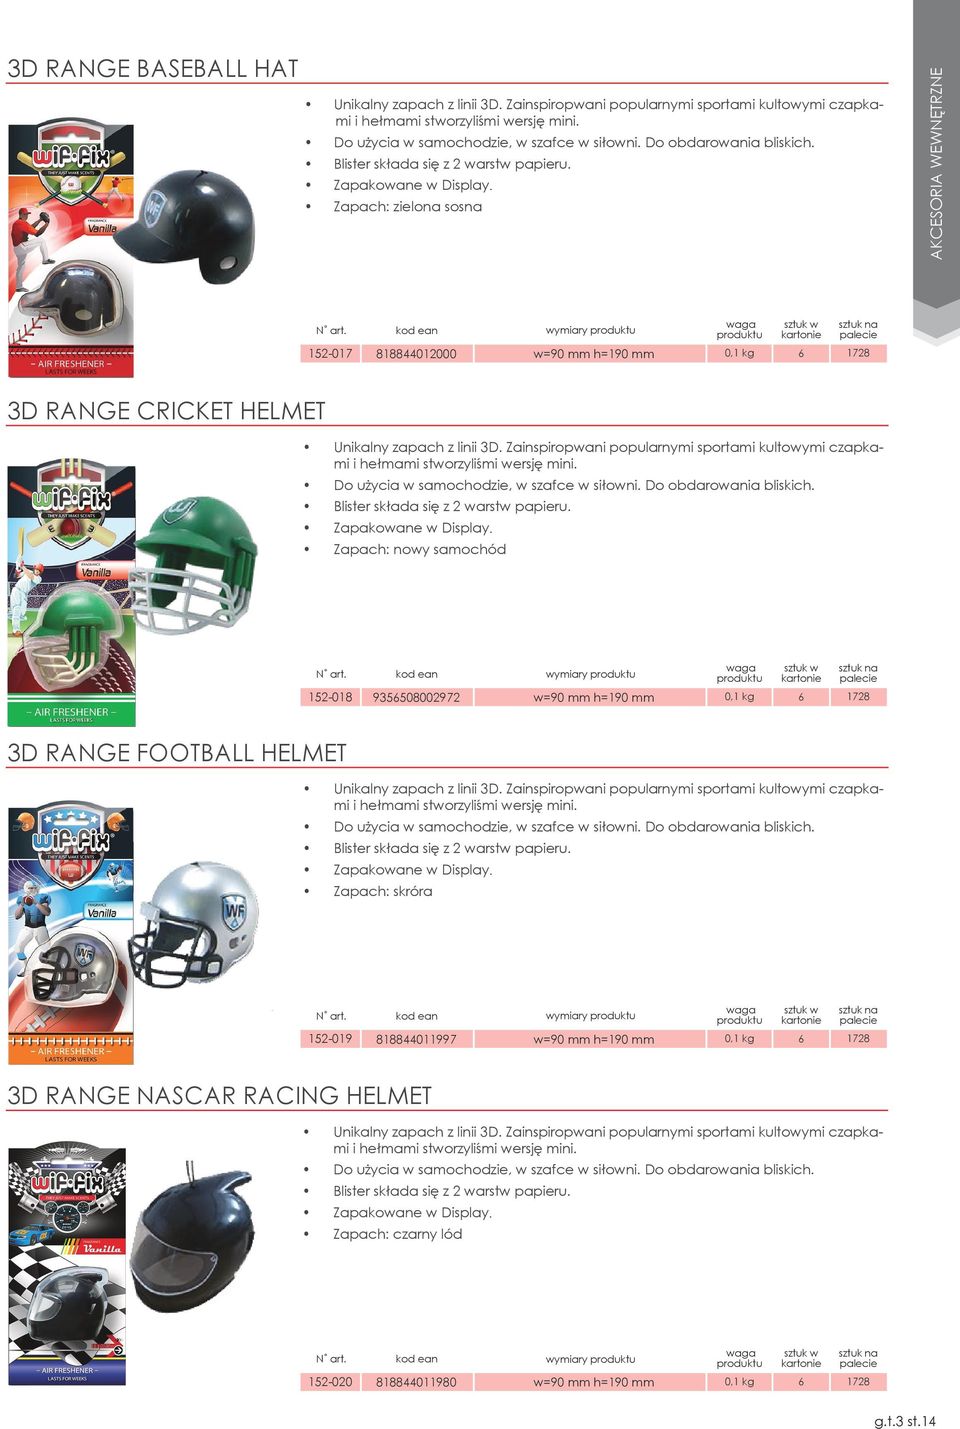 Zapach: zielona sosna 152-017 818844012000 w=90 mm h=190 mm 0,1 kg 6 1728 3d Range Cricket Helmet Unikalny zapach z linii 3D.